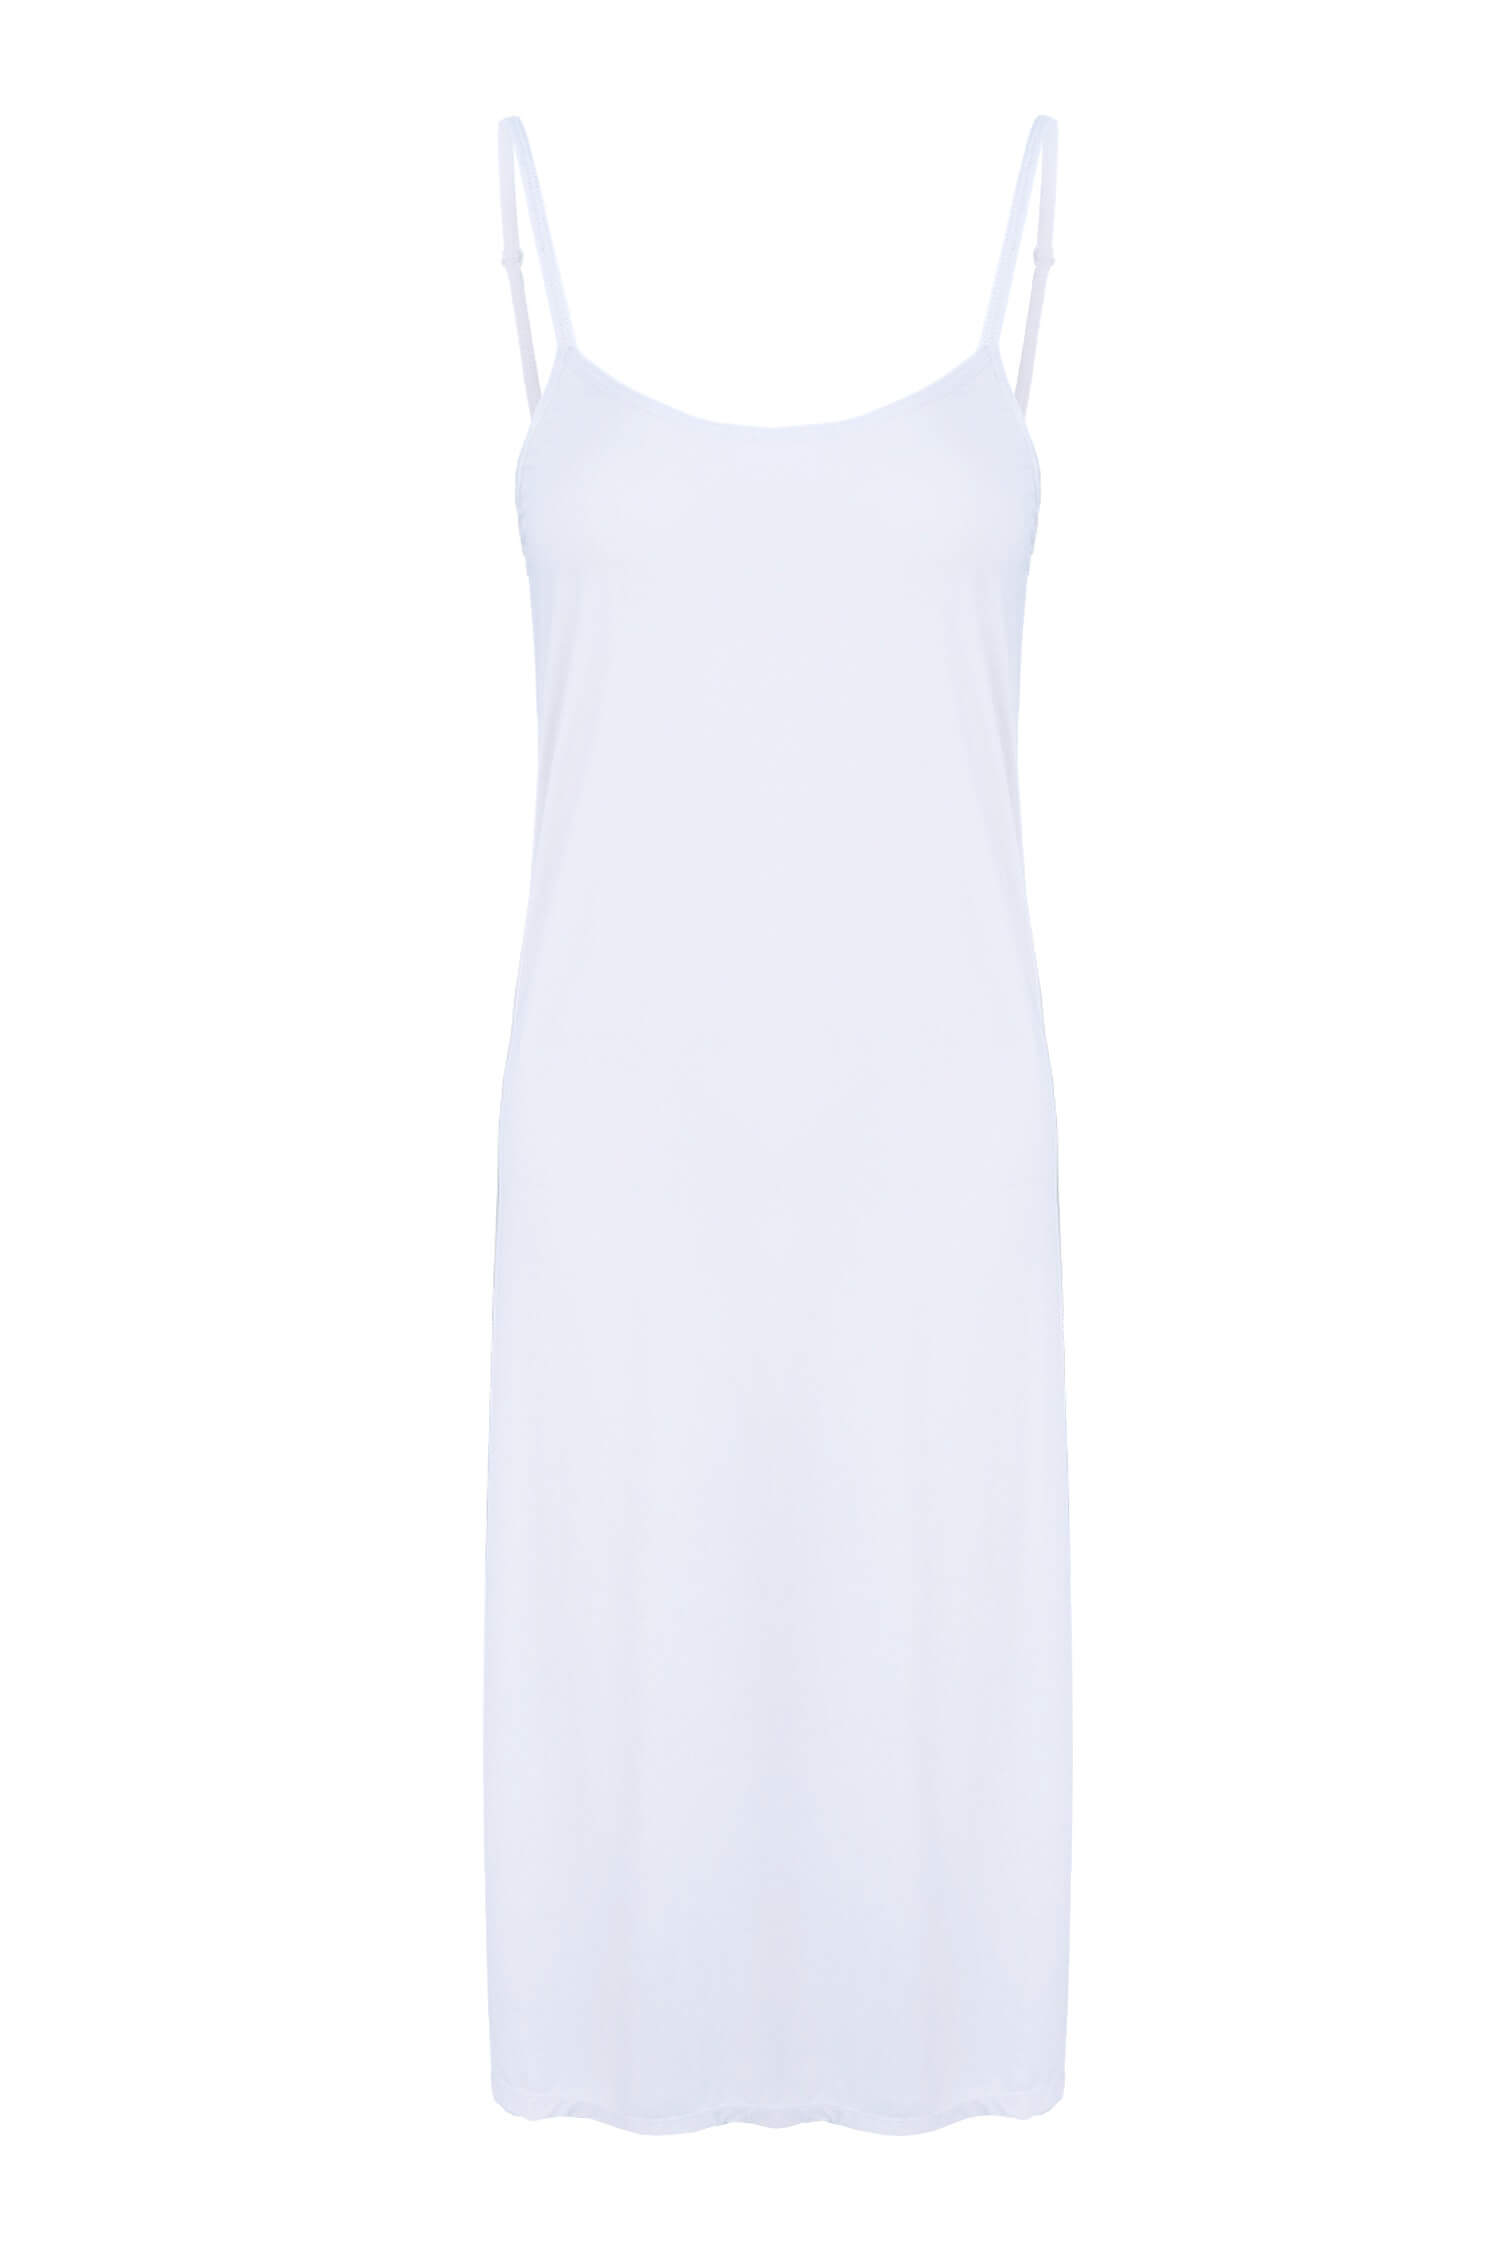 Gerta dlouhá spodnička pod šaty GBTW-713 L bílá